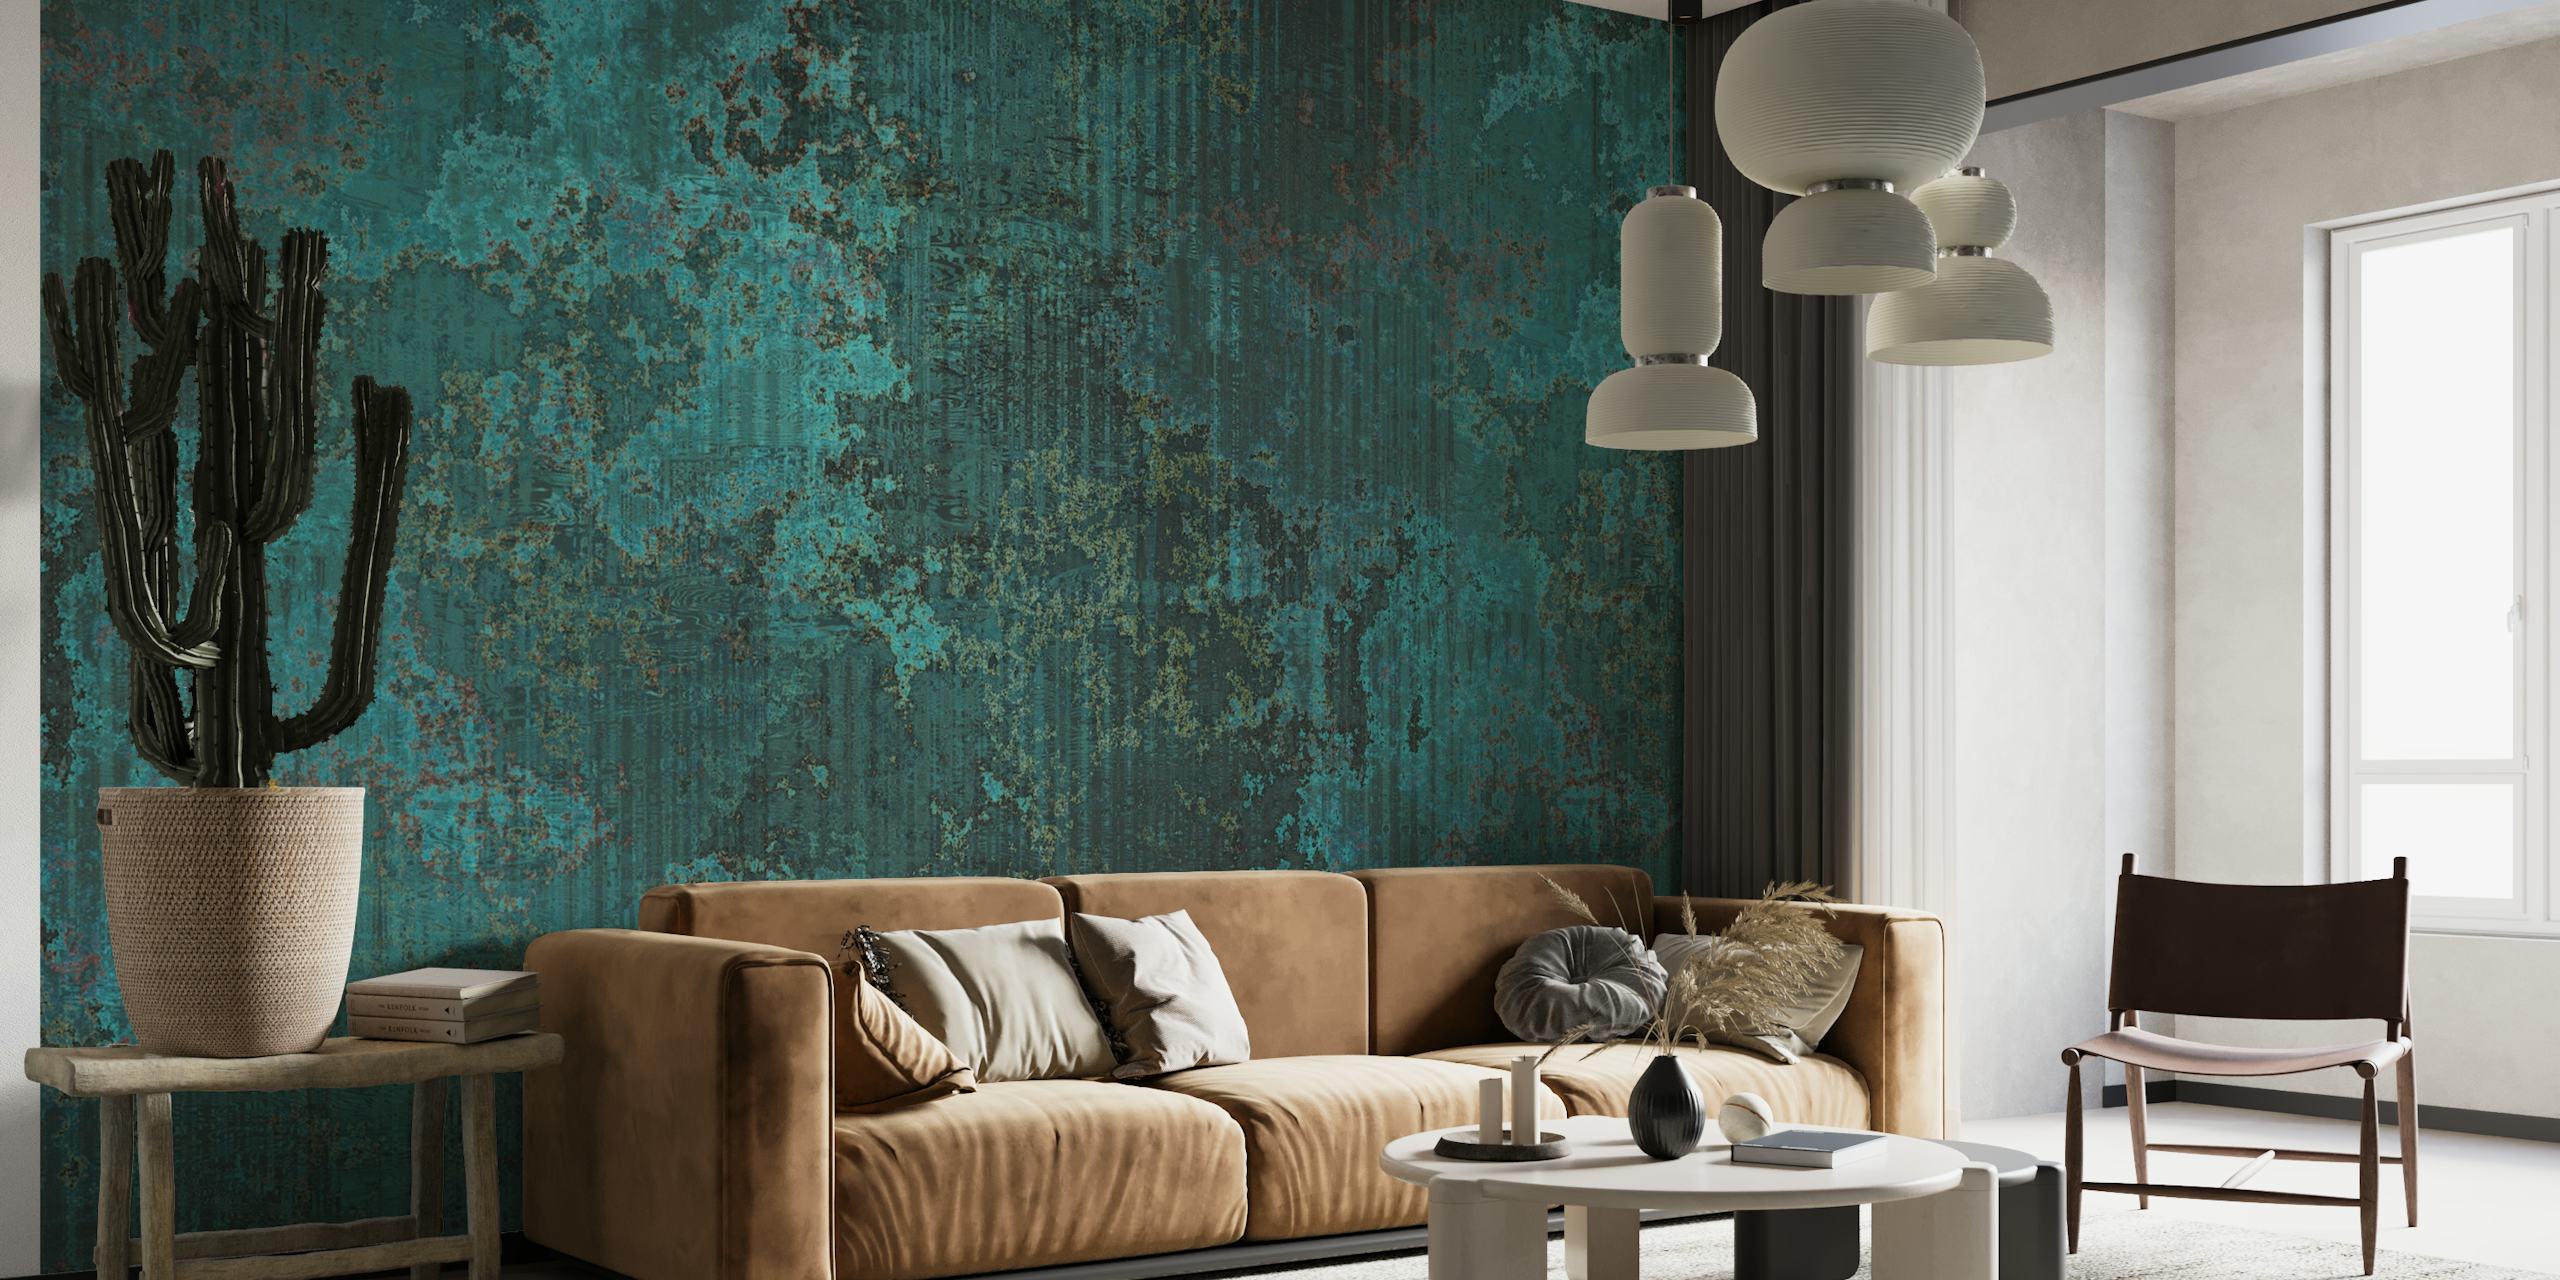 Fotomural vinílico de parede com textura de metal corroído verde-azulado escuro com uma mistura de elegância rústica.